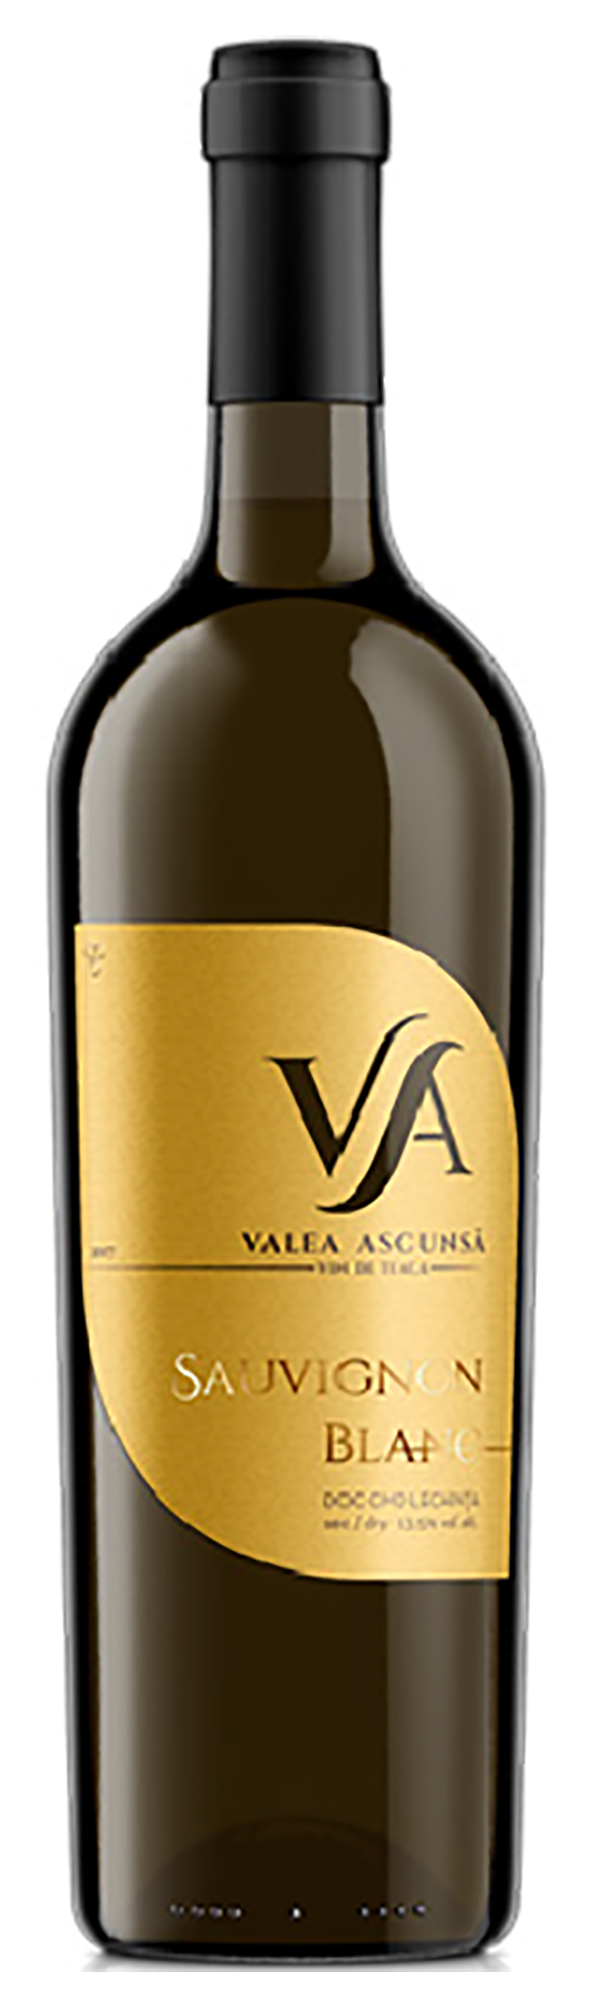  Vin alb - Valea Ascunsa, Sauvignon Blanc, sec, 2017 | Valea Ascunsa 